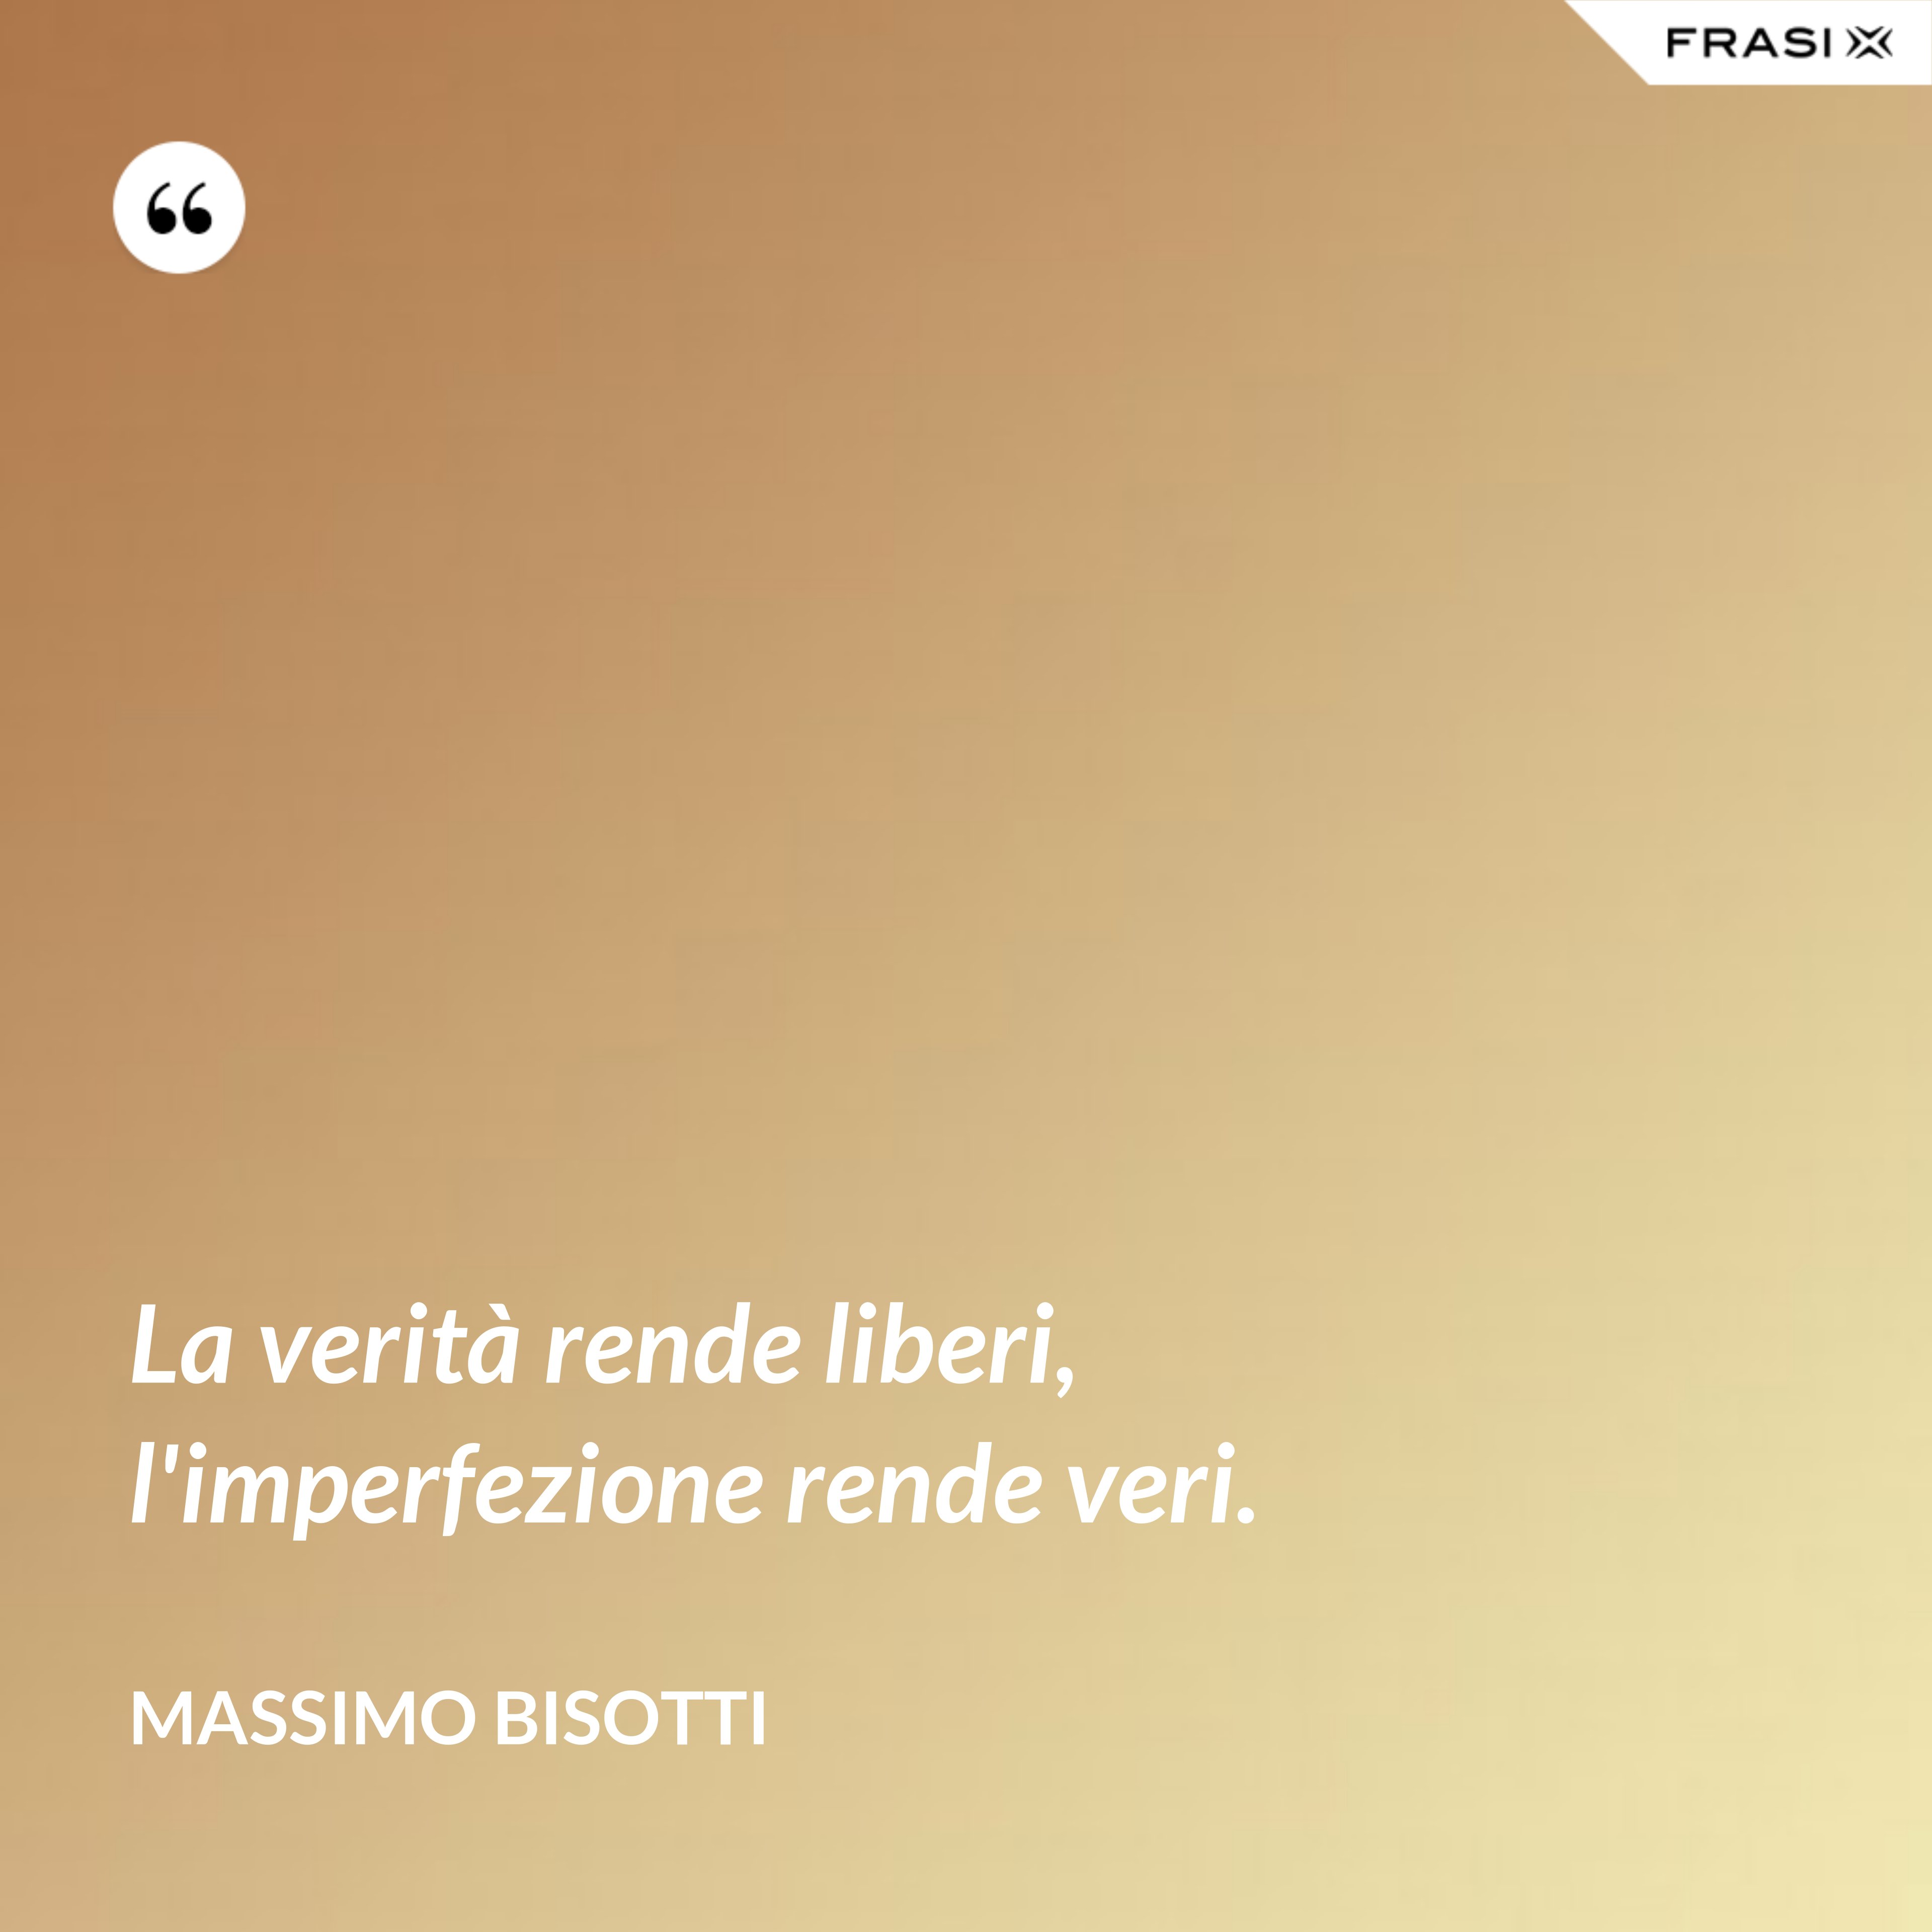 La verità rende liberi, l'imperfezione rende veri. - Massimo Bisotti